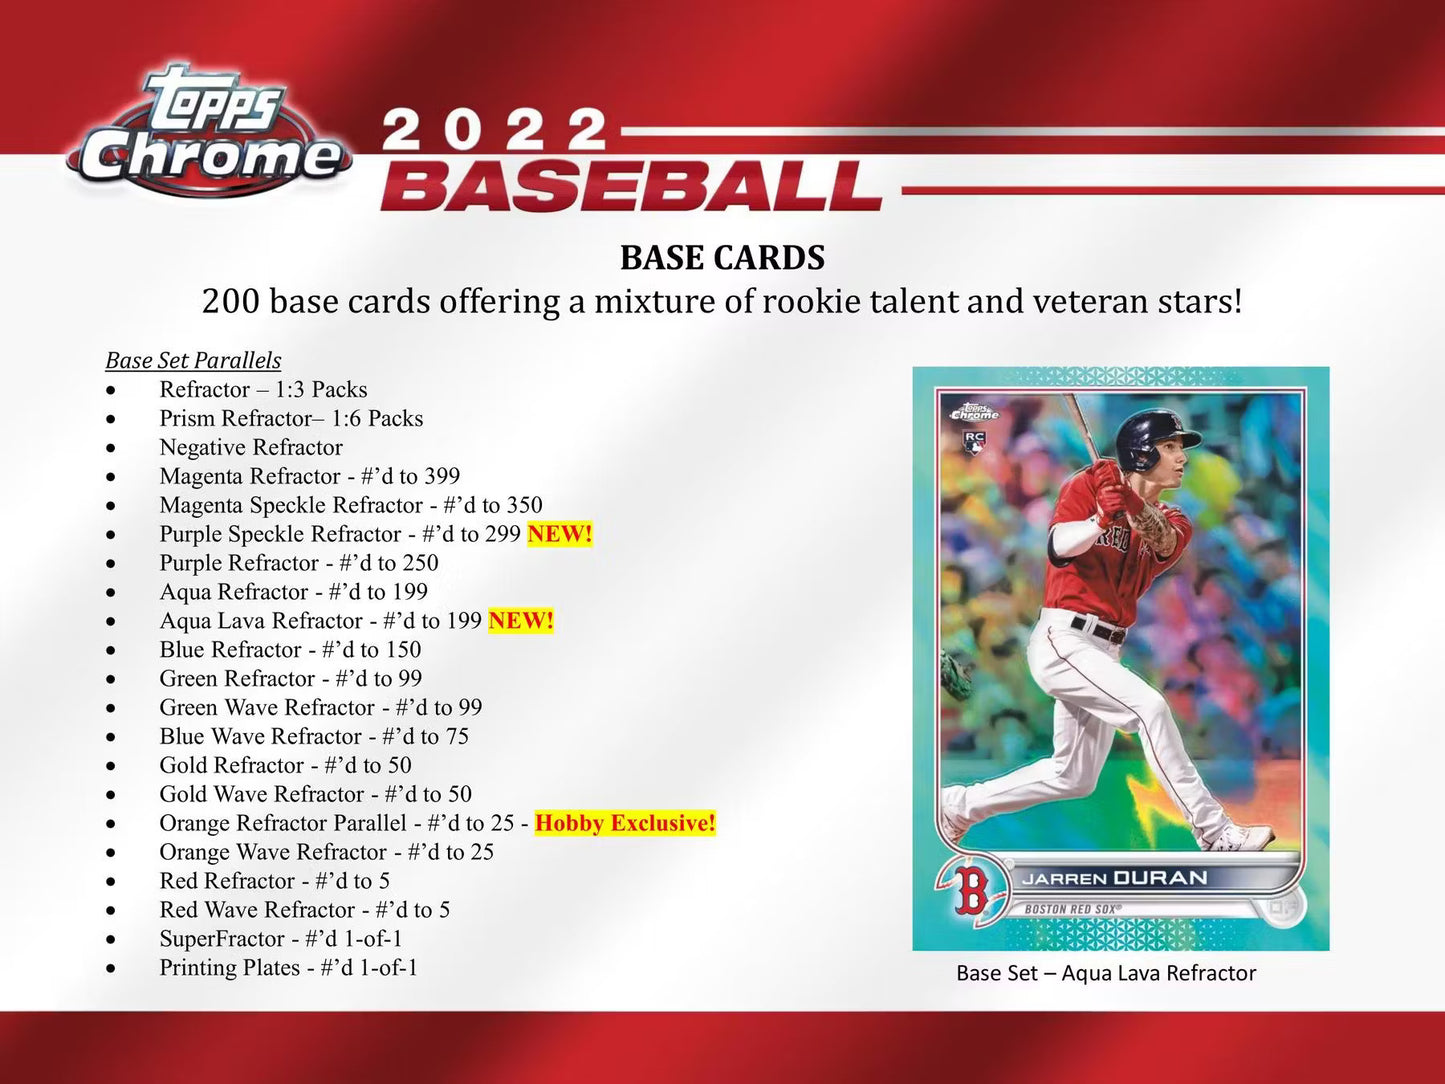 2022 Topps Chrome Baseball Hobby Box (+1 Silver Pack)